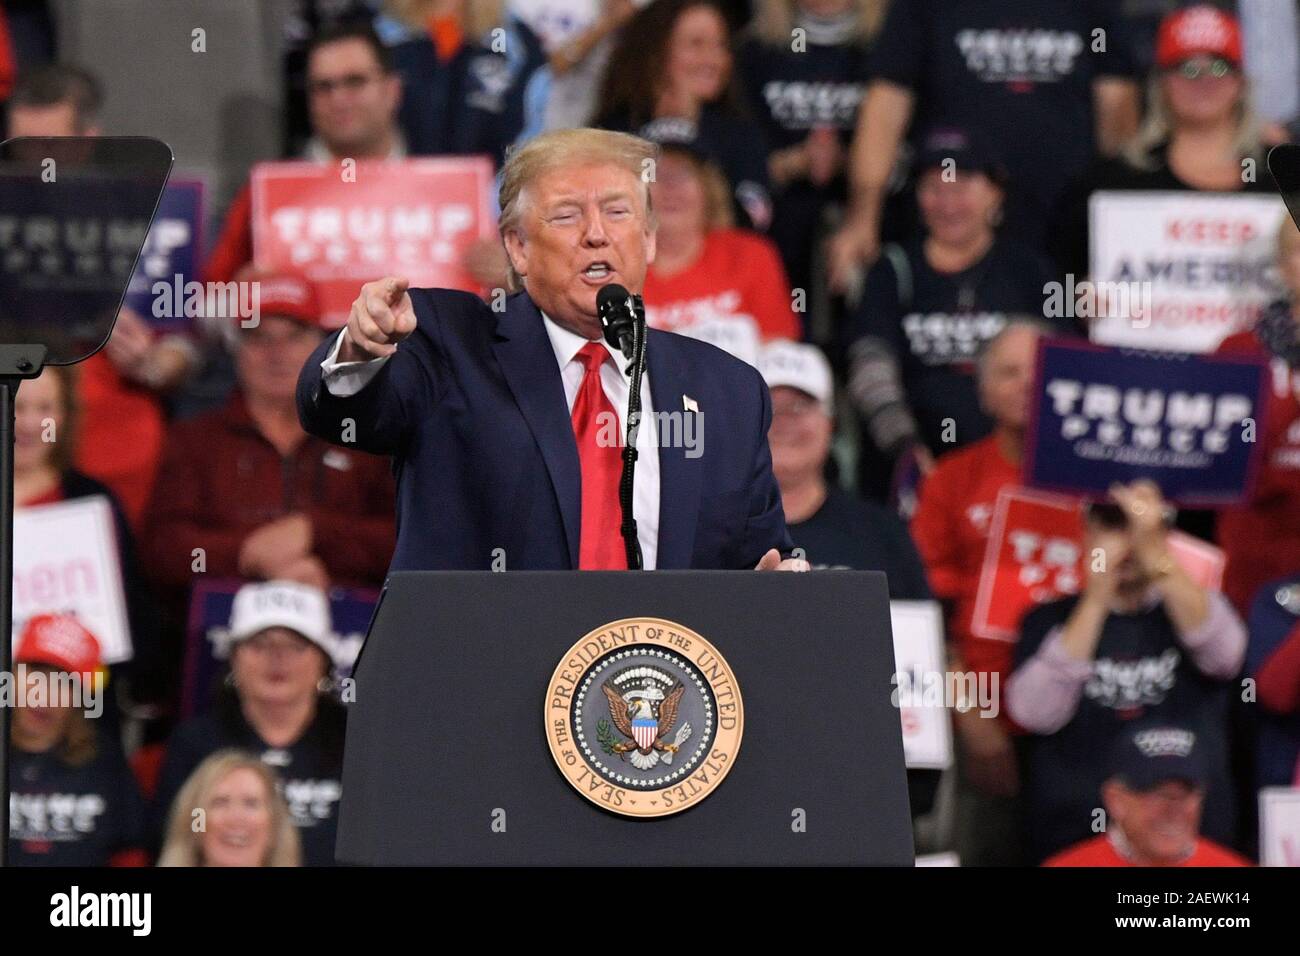 HERSHEY, PA - 10 décembre : le président américain Donald Trump prend la parole à un rassemblement électoral le 10 décembre 2019 à Giant Center à Hershey, en Pennsylvanie. Banque D'Images